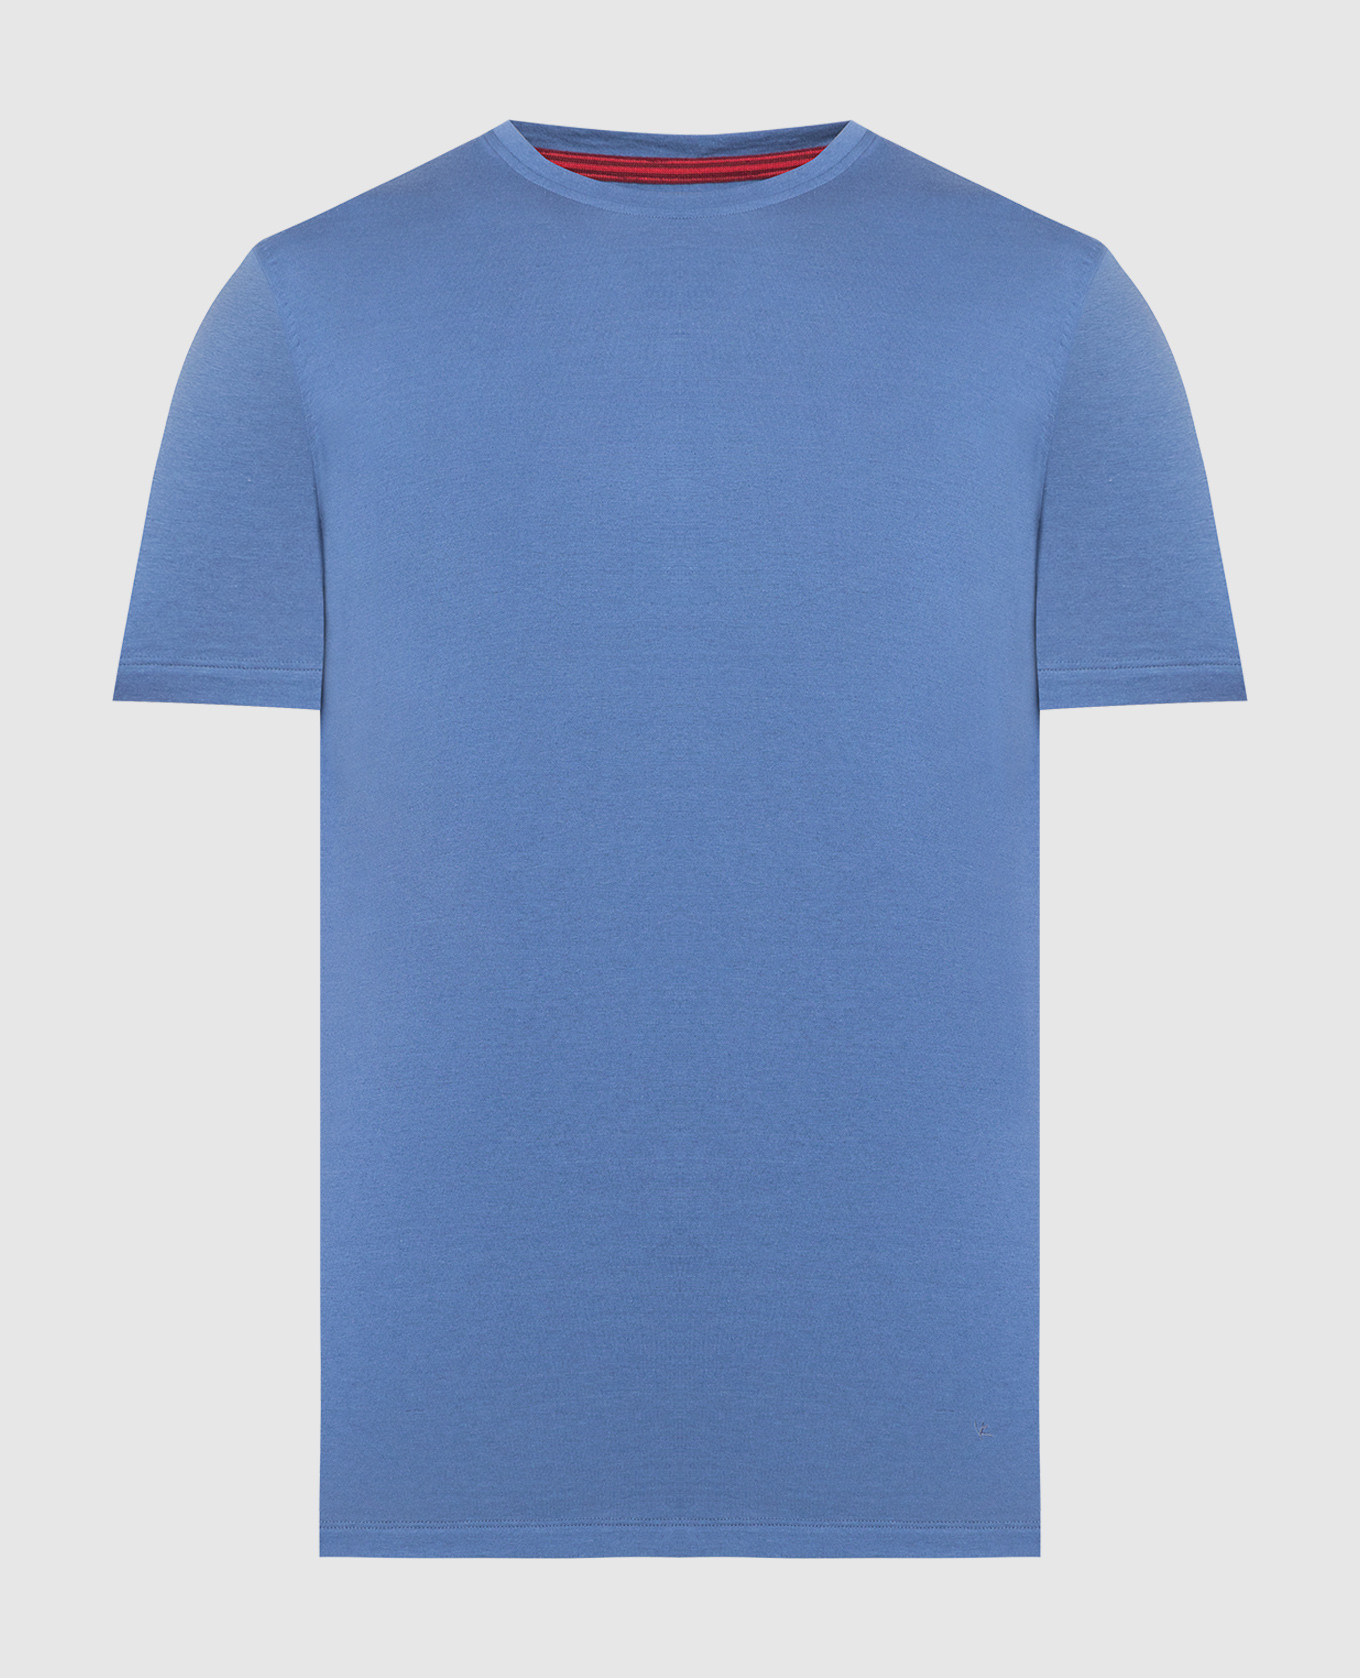 Blue silk T-shirt